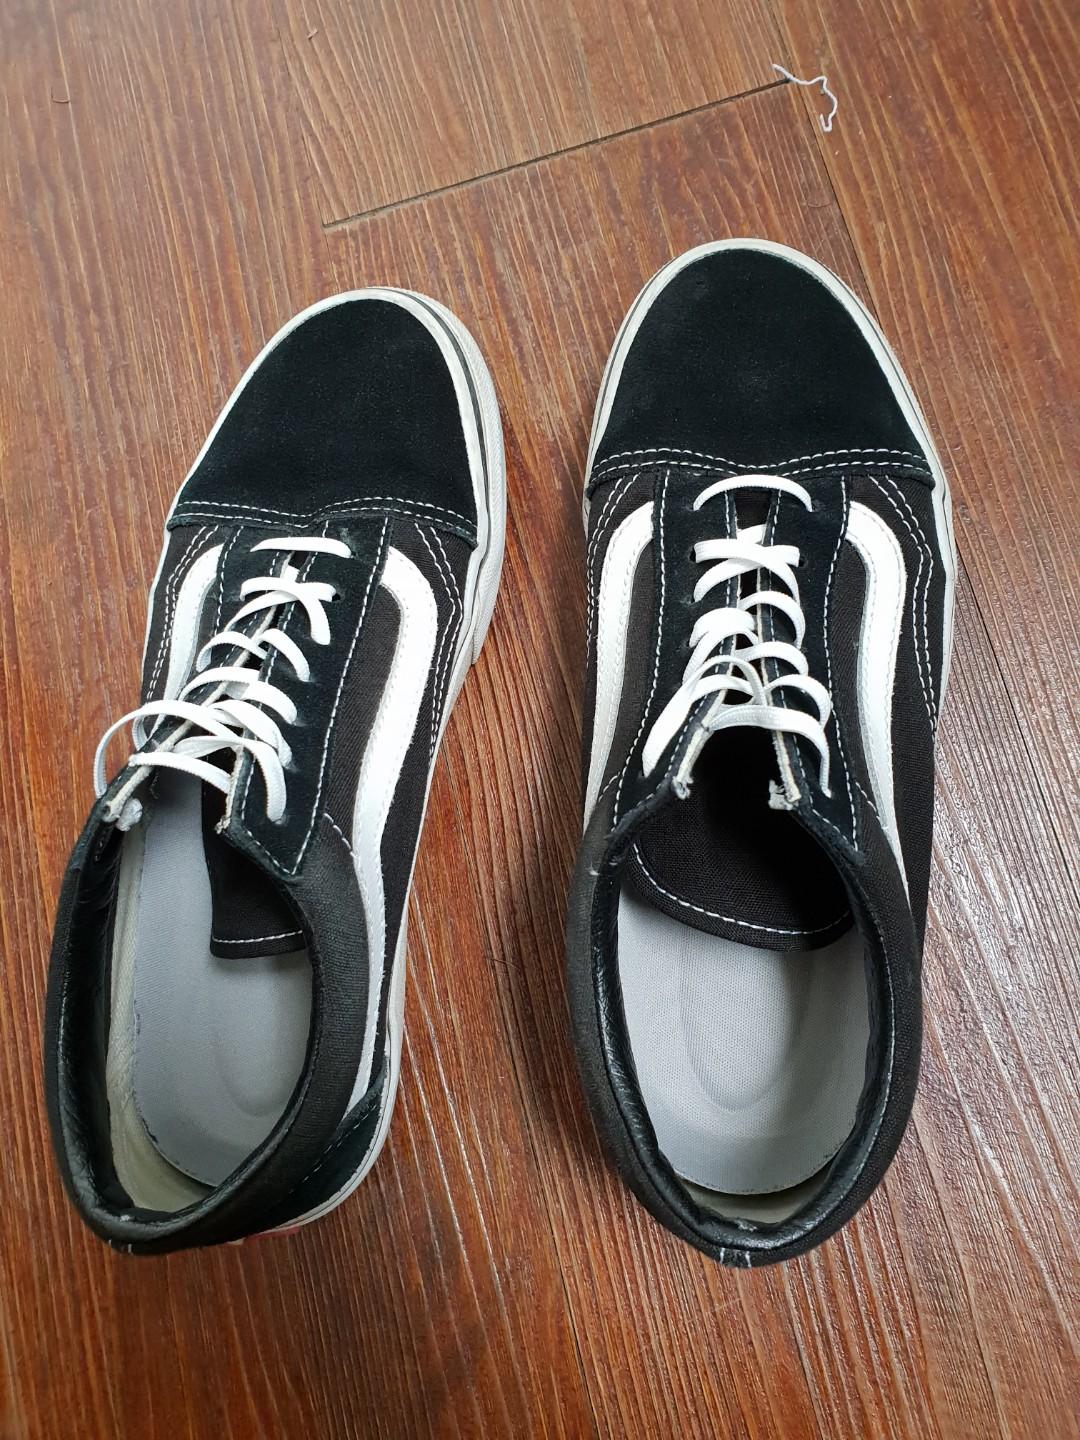 school shoes size 4.5